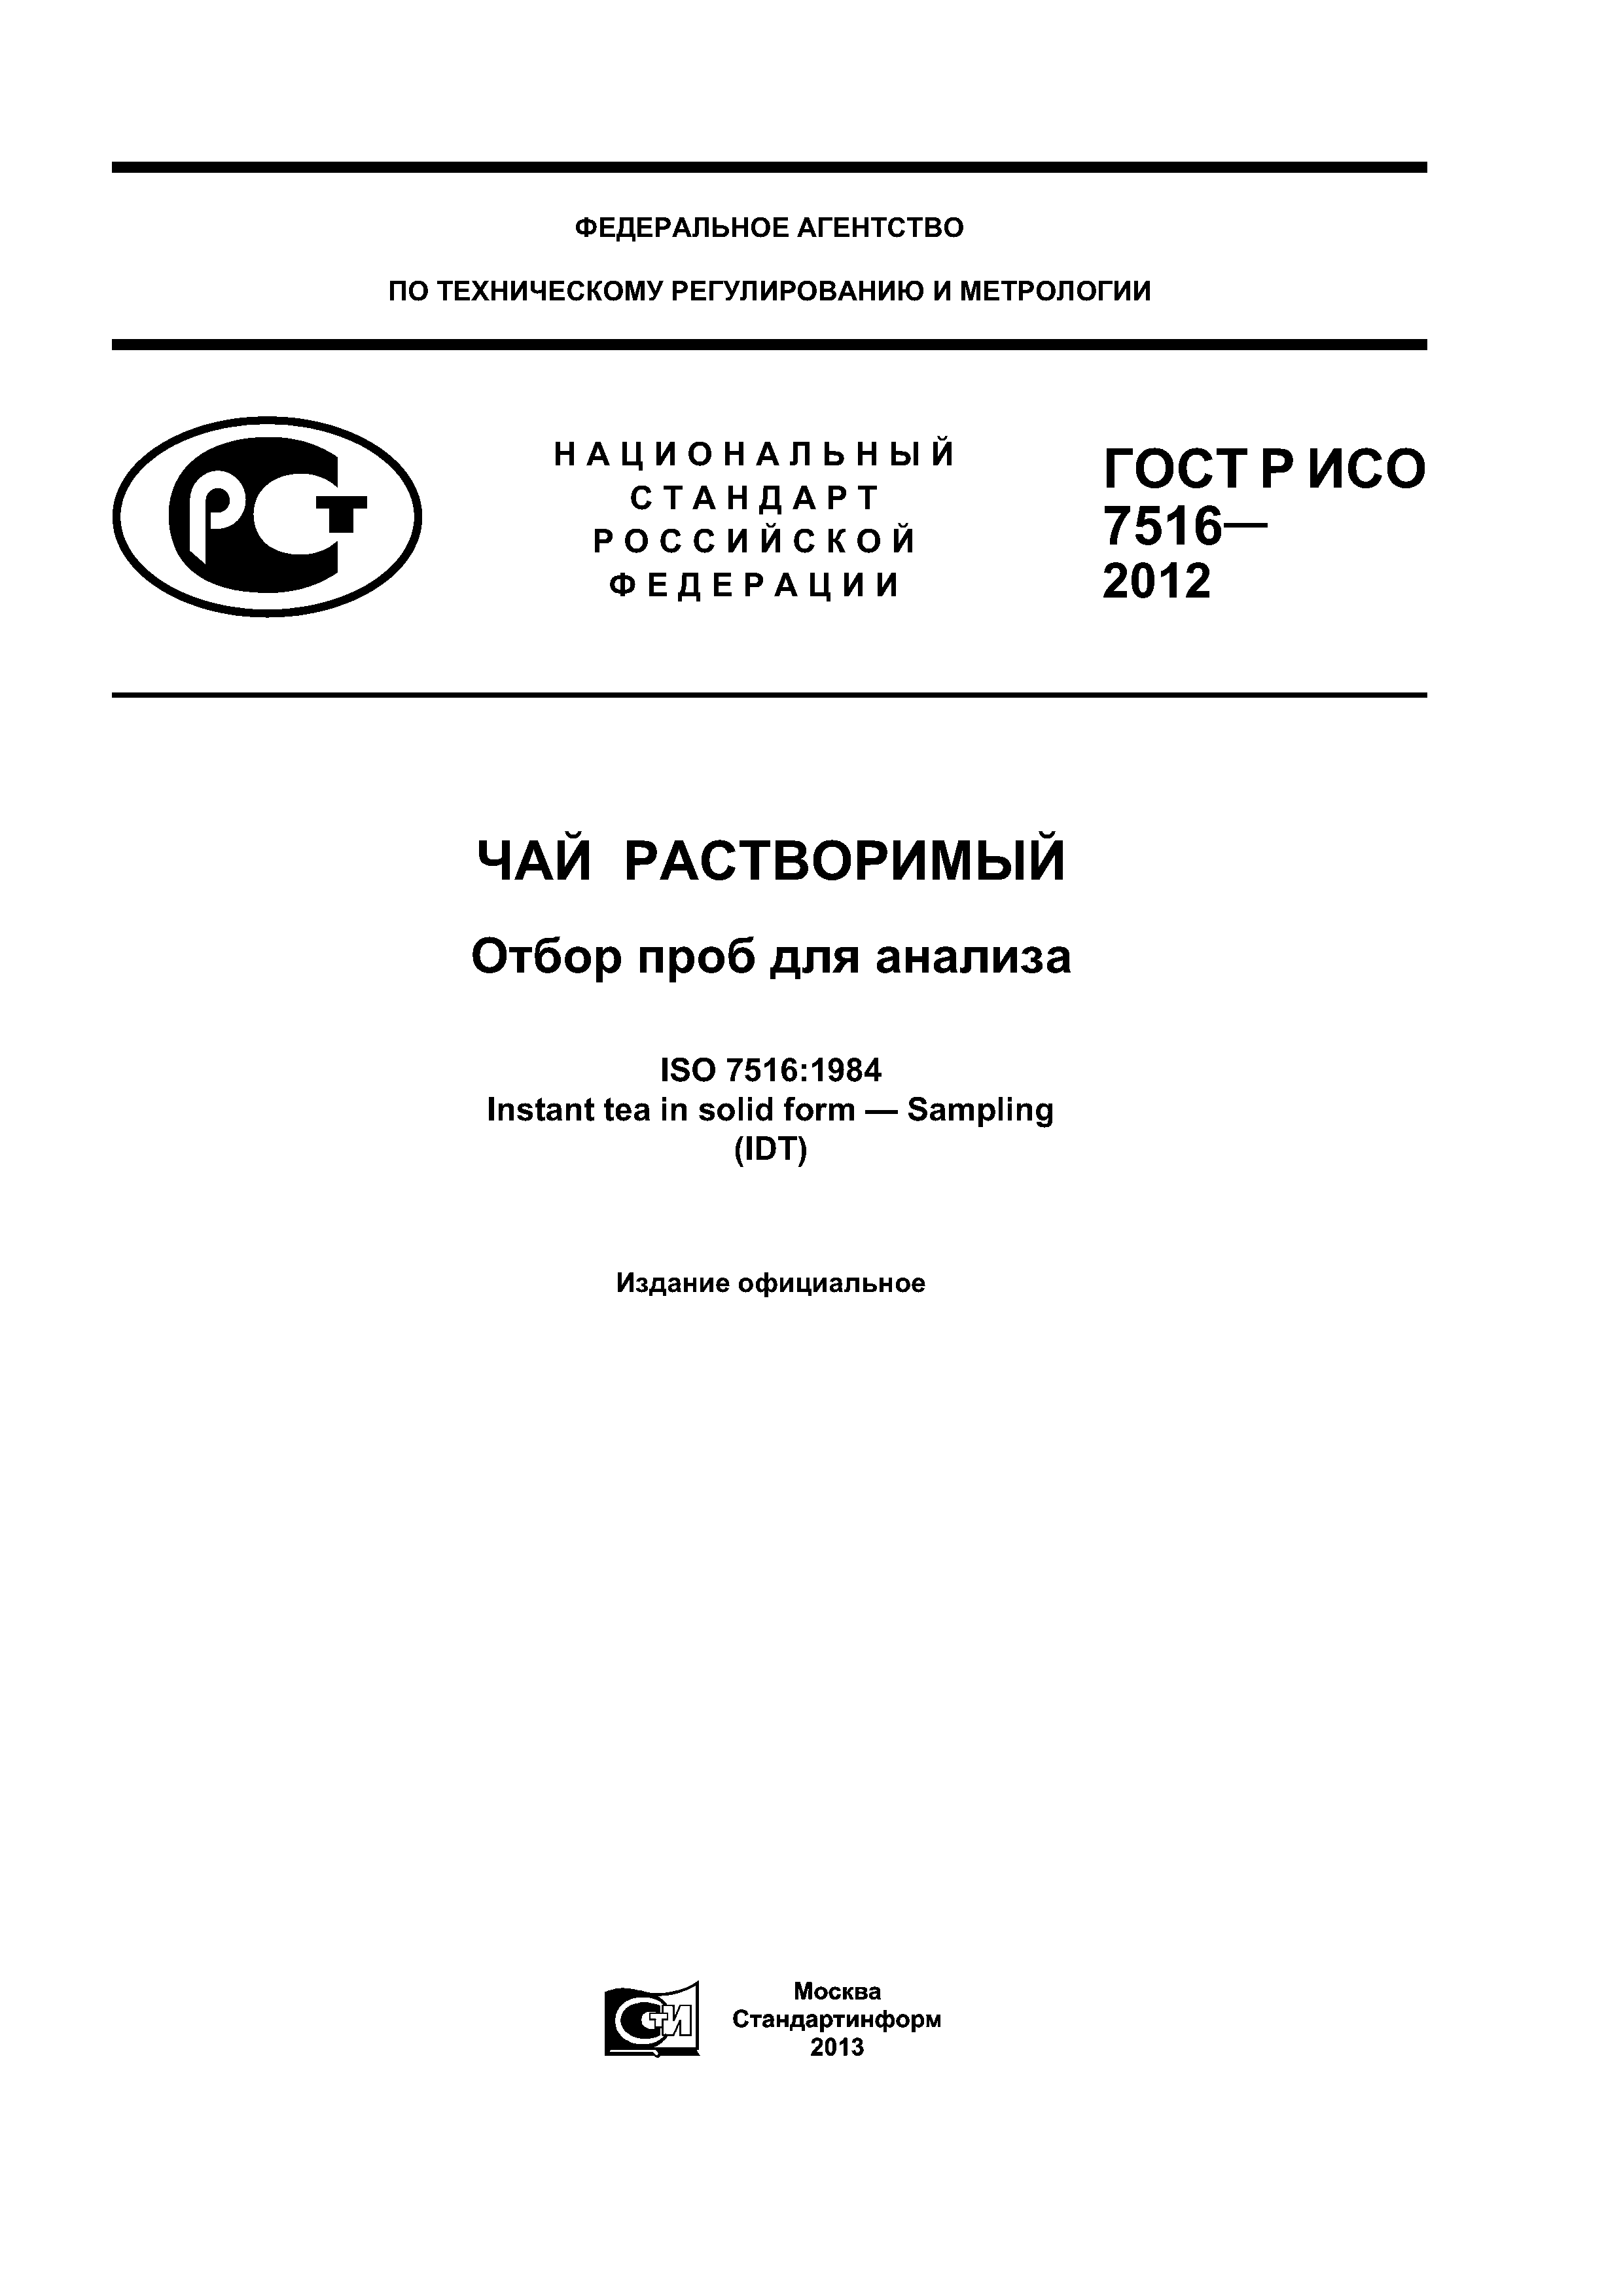 ГОСТ Р ИСО 7516-2012